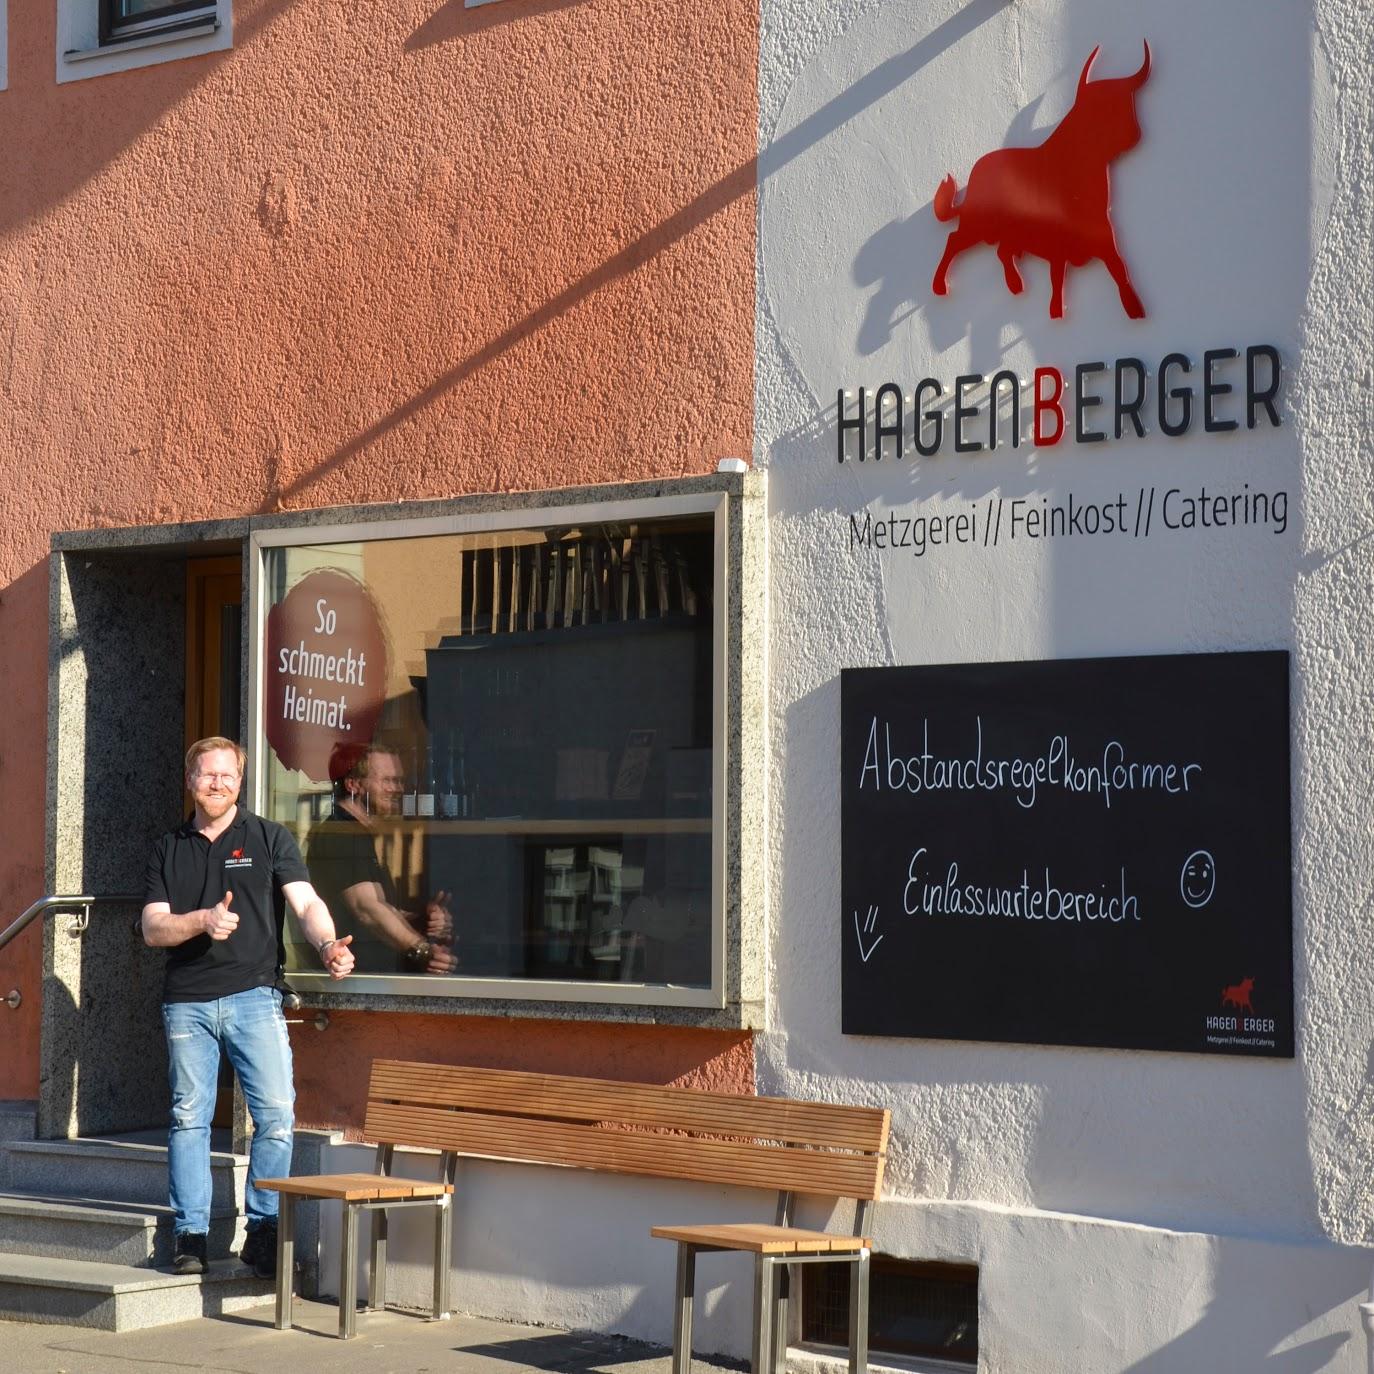 Restaurant "HAGENBERGER – Metzgerei -- Feinkost -- Catering" in Pfarrkirchen